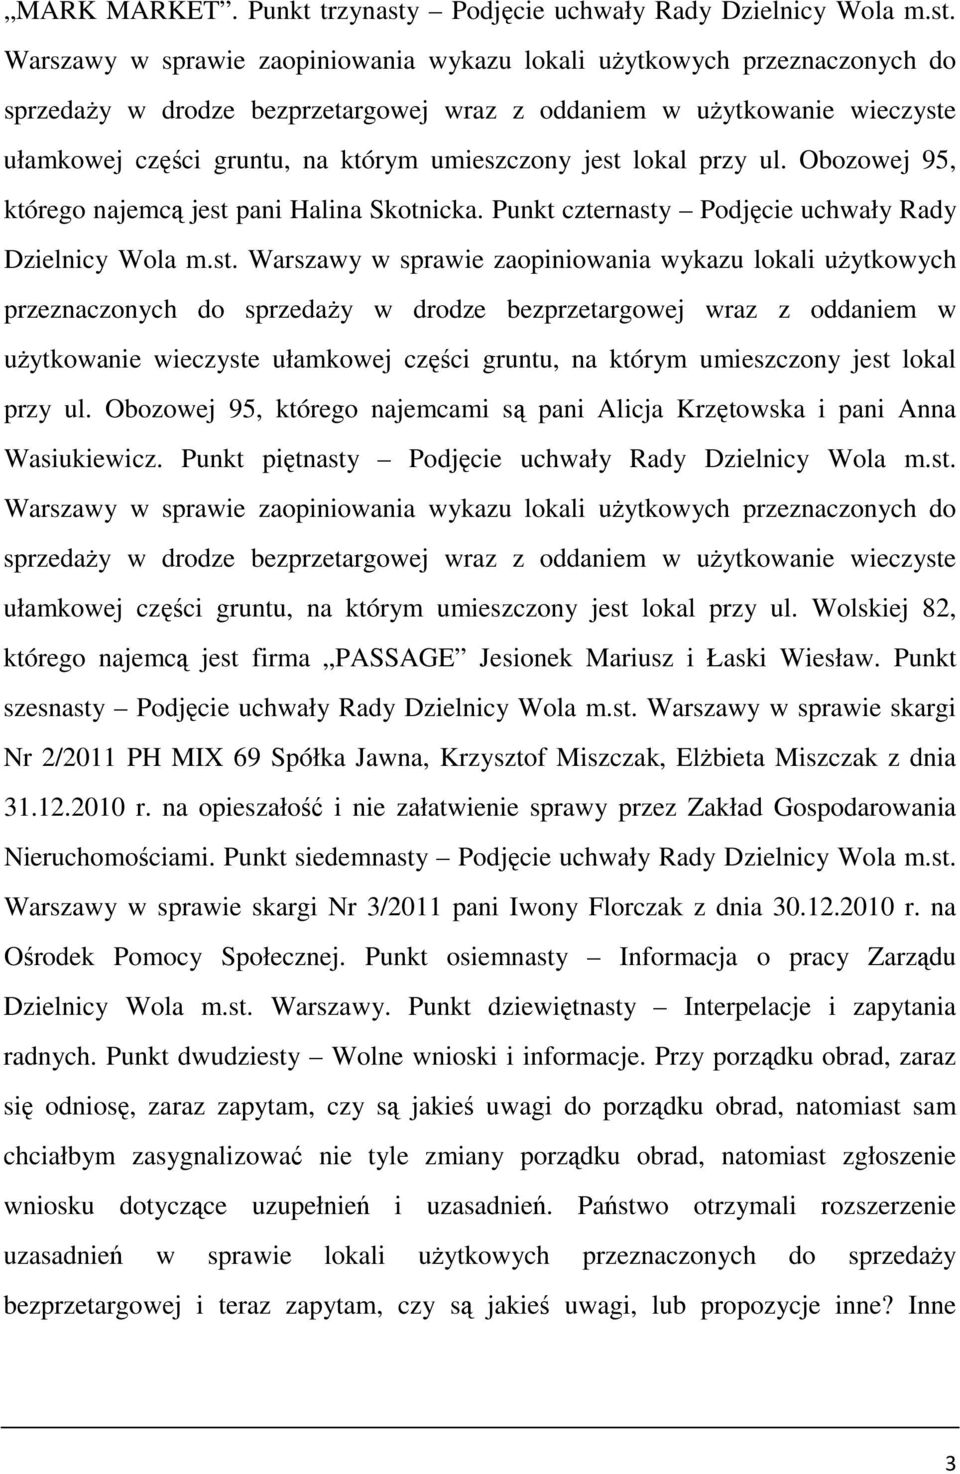 Warszawy w sprawie zaopiniowania wykazu lokali uŝytkowych przeznaczonych do sprzedaŝy w drodze bezprzetargowej wraz z oddaniem w uŝytkowanie wieczyste ułamkowej części gruntu, na którym umieszczony